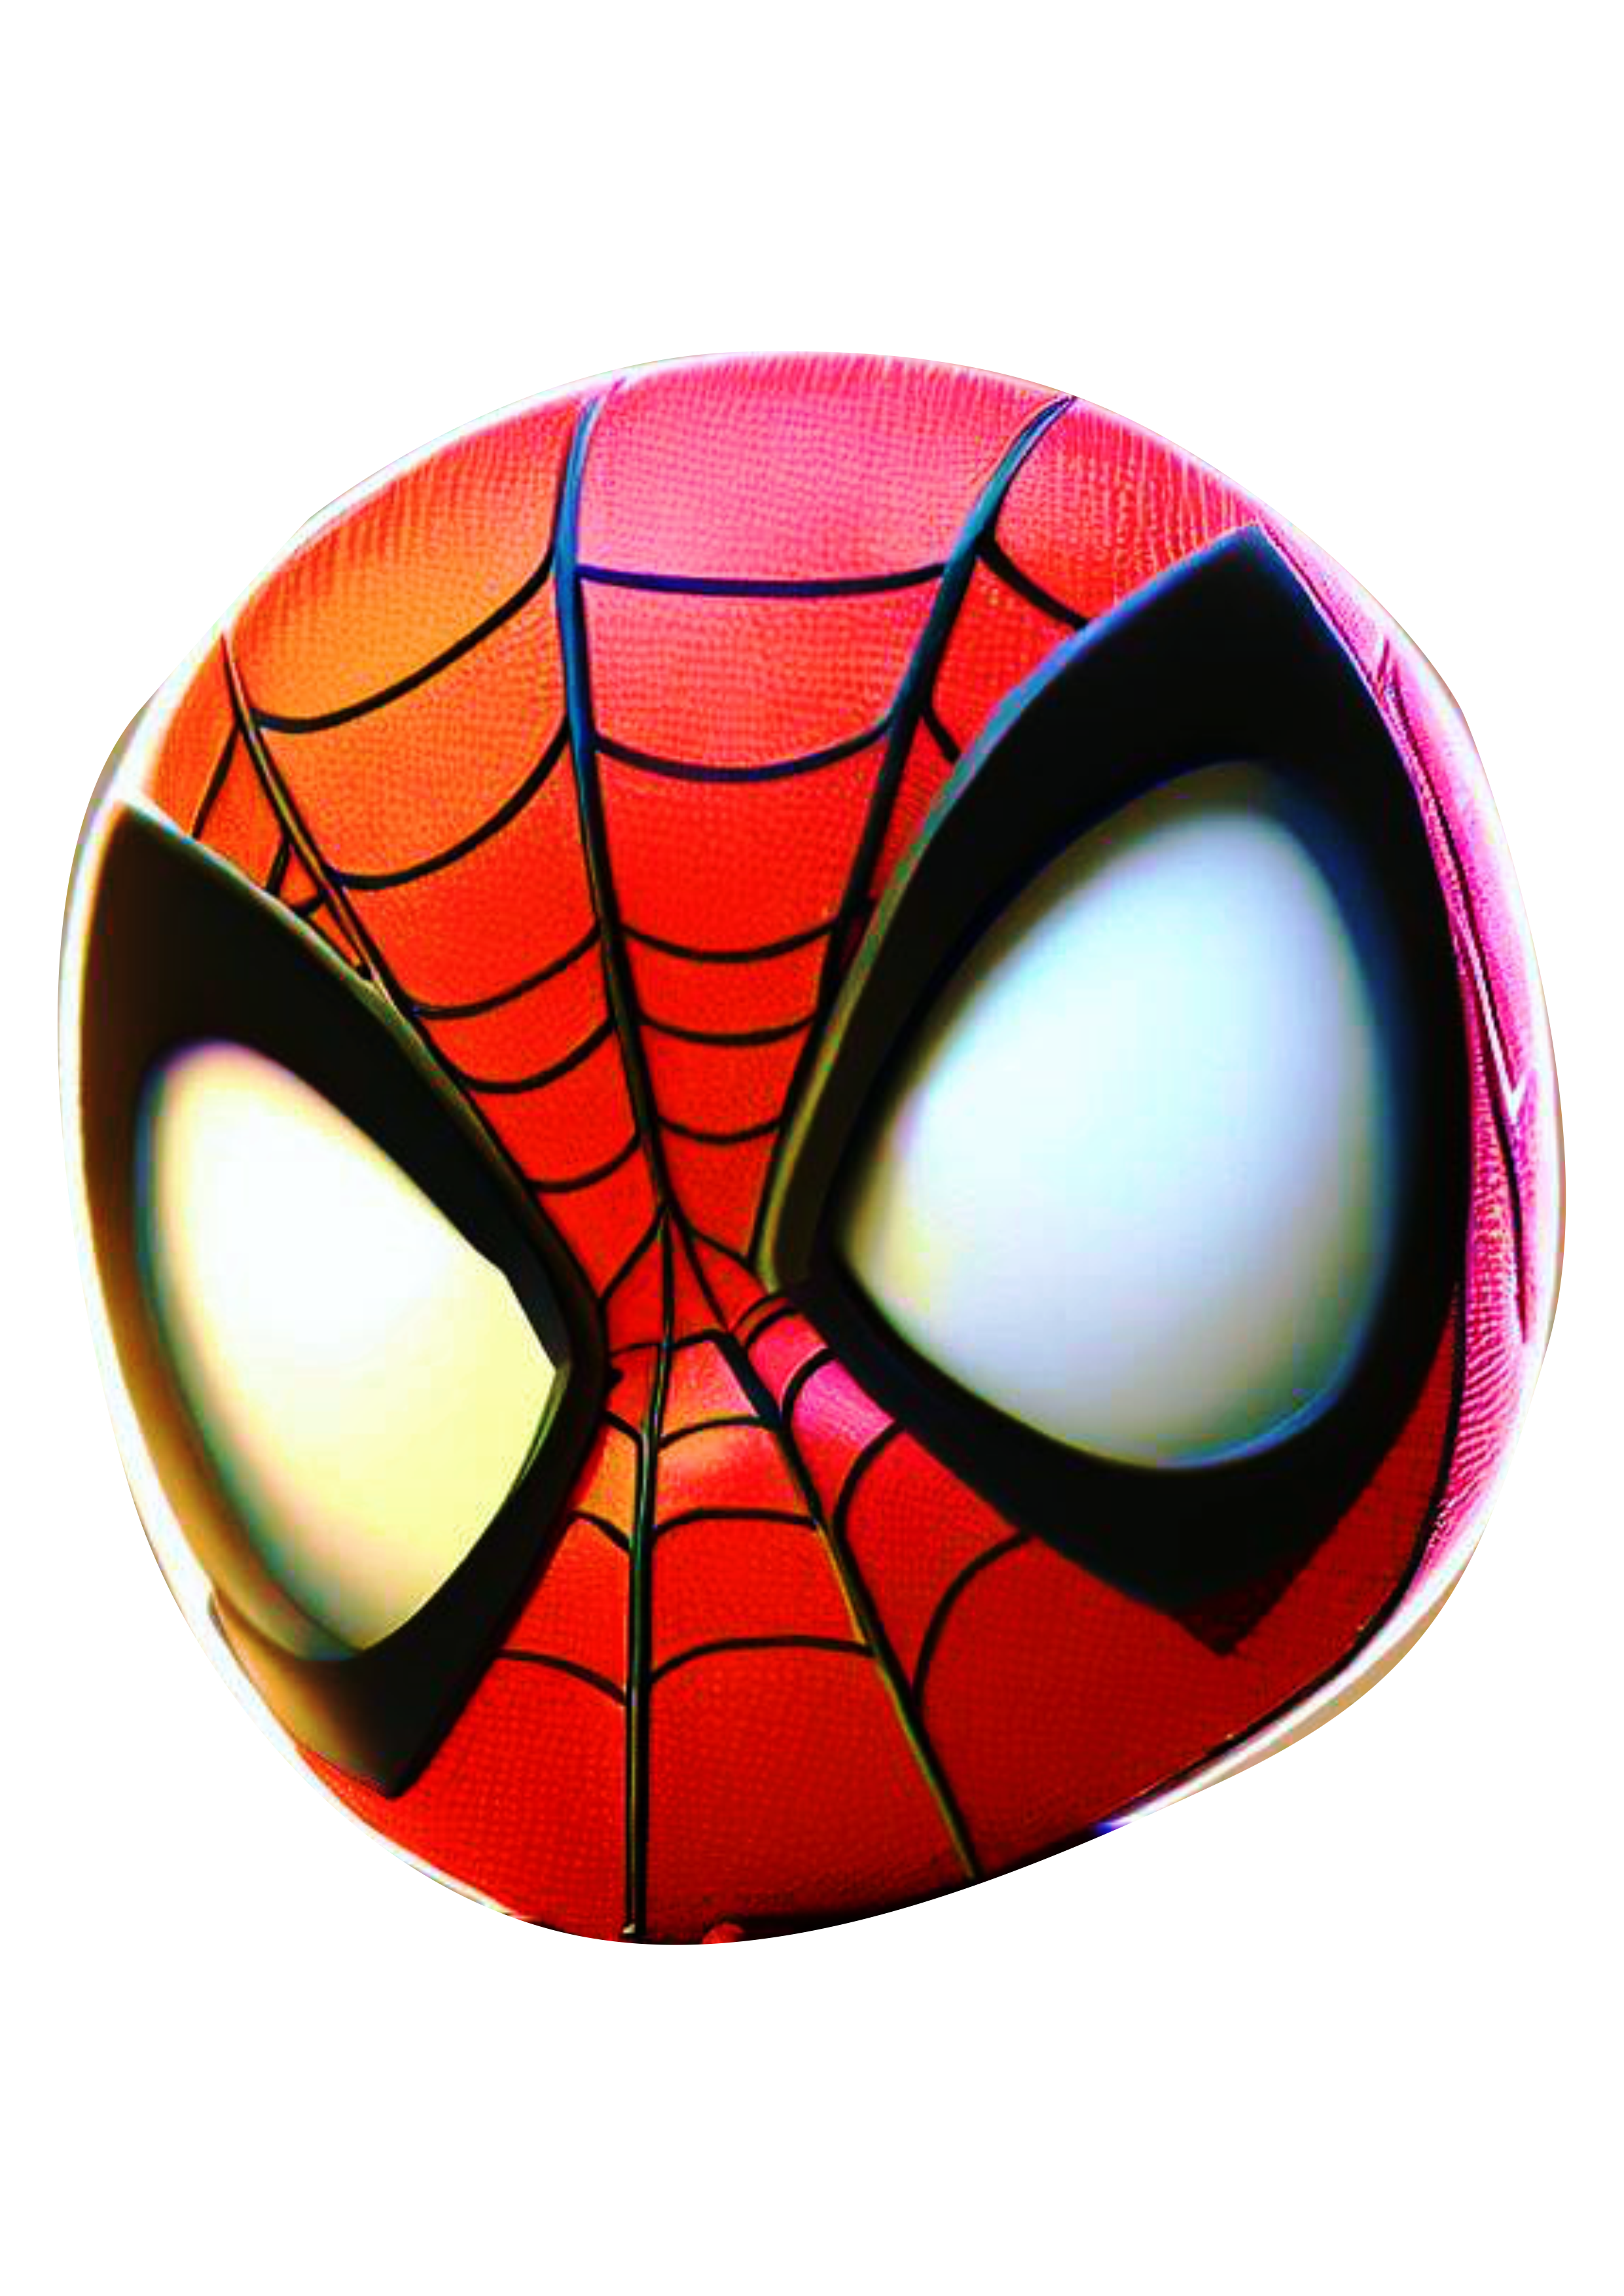 Homem aranha cute spider man ultimate baby máscara cabeça CGI computação gráfica animação Peter Parker design pack de imagens png